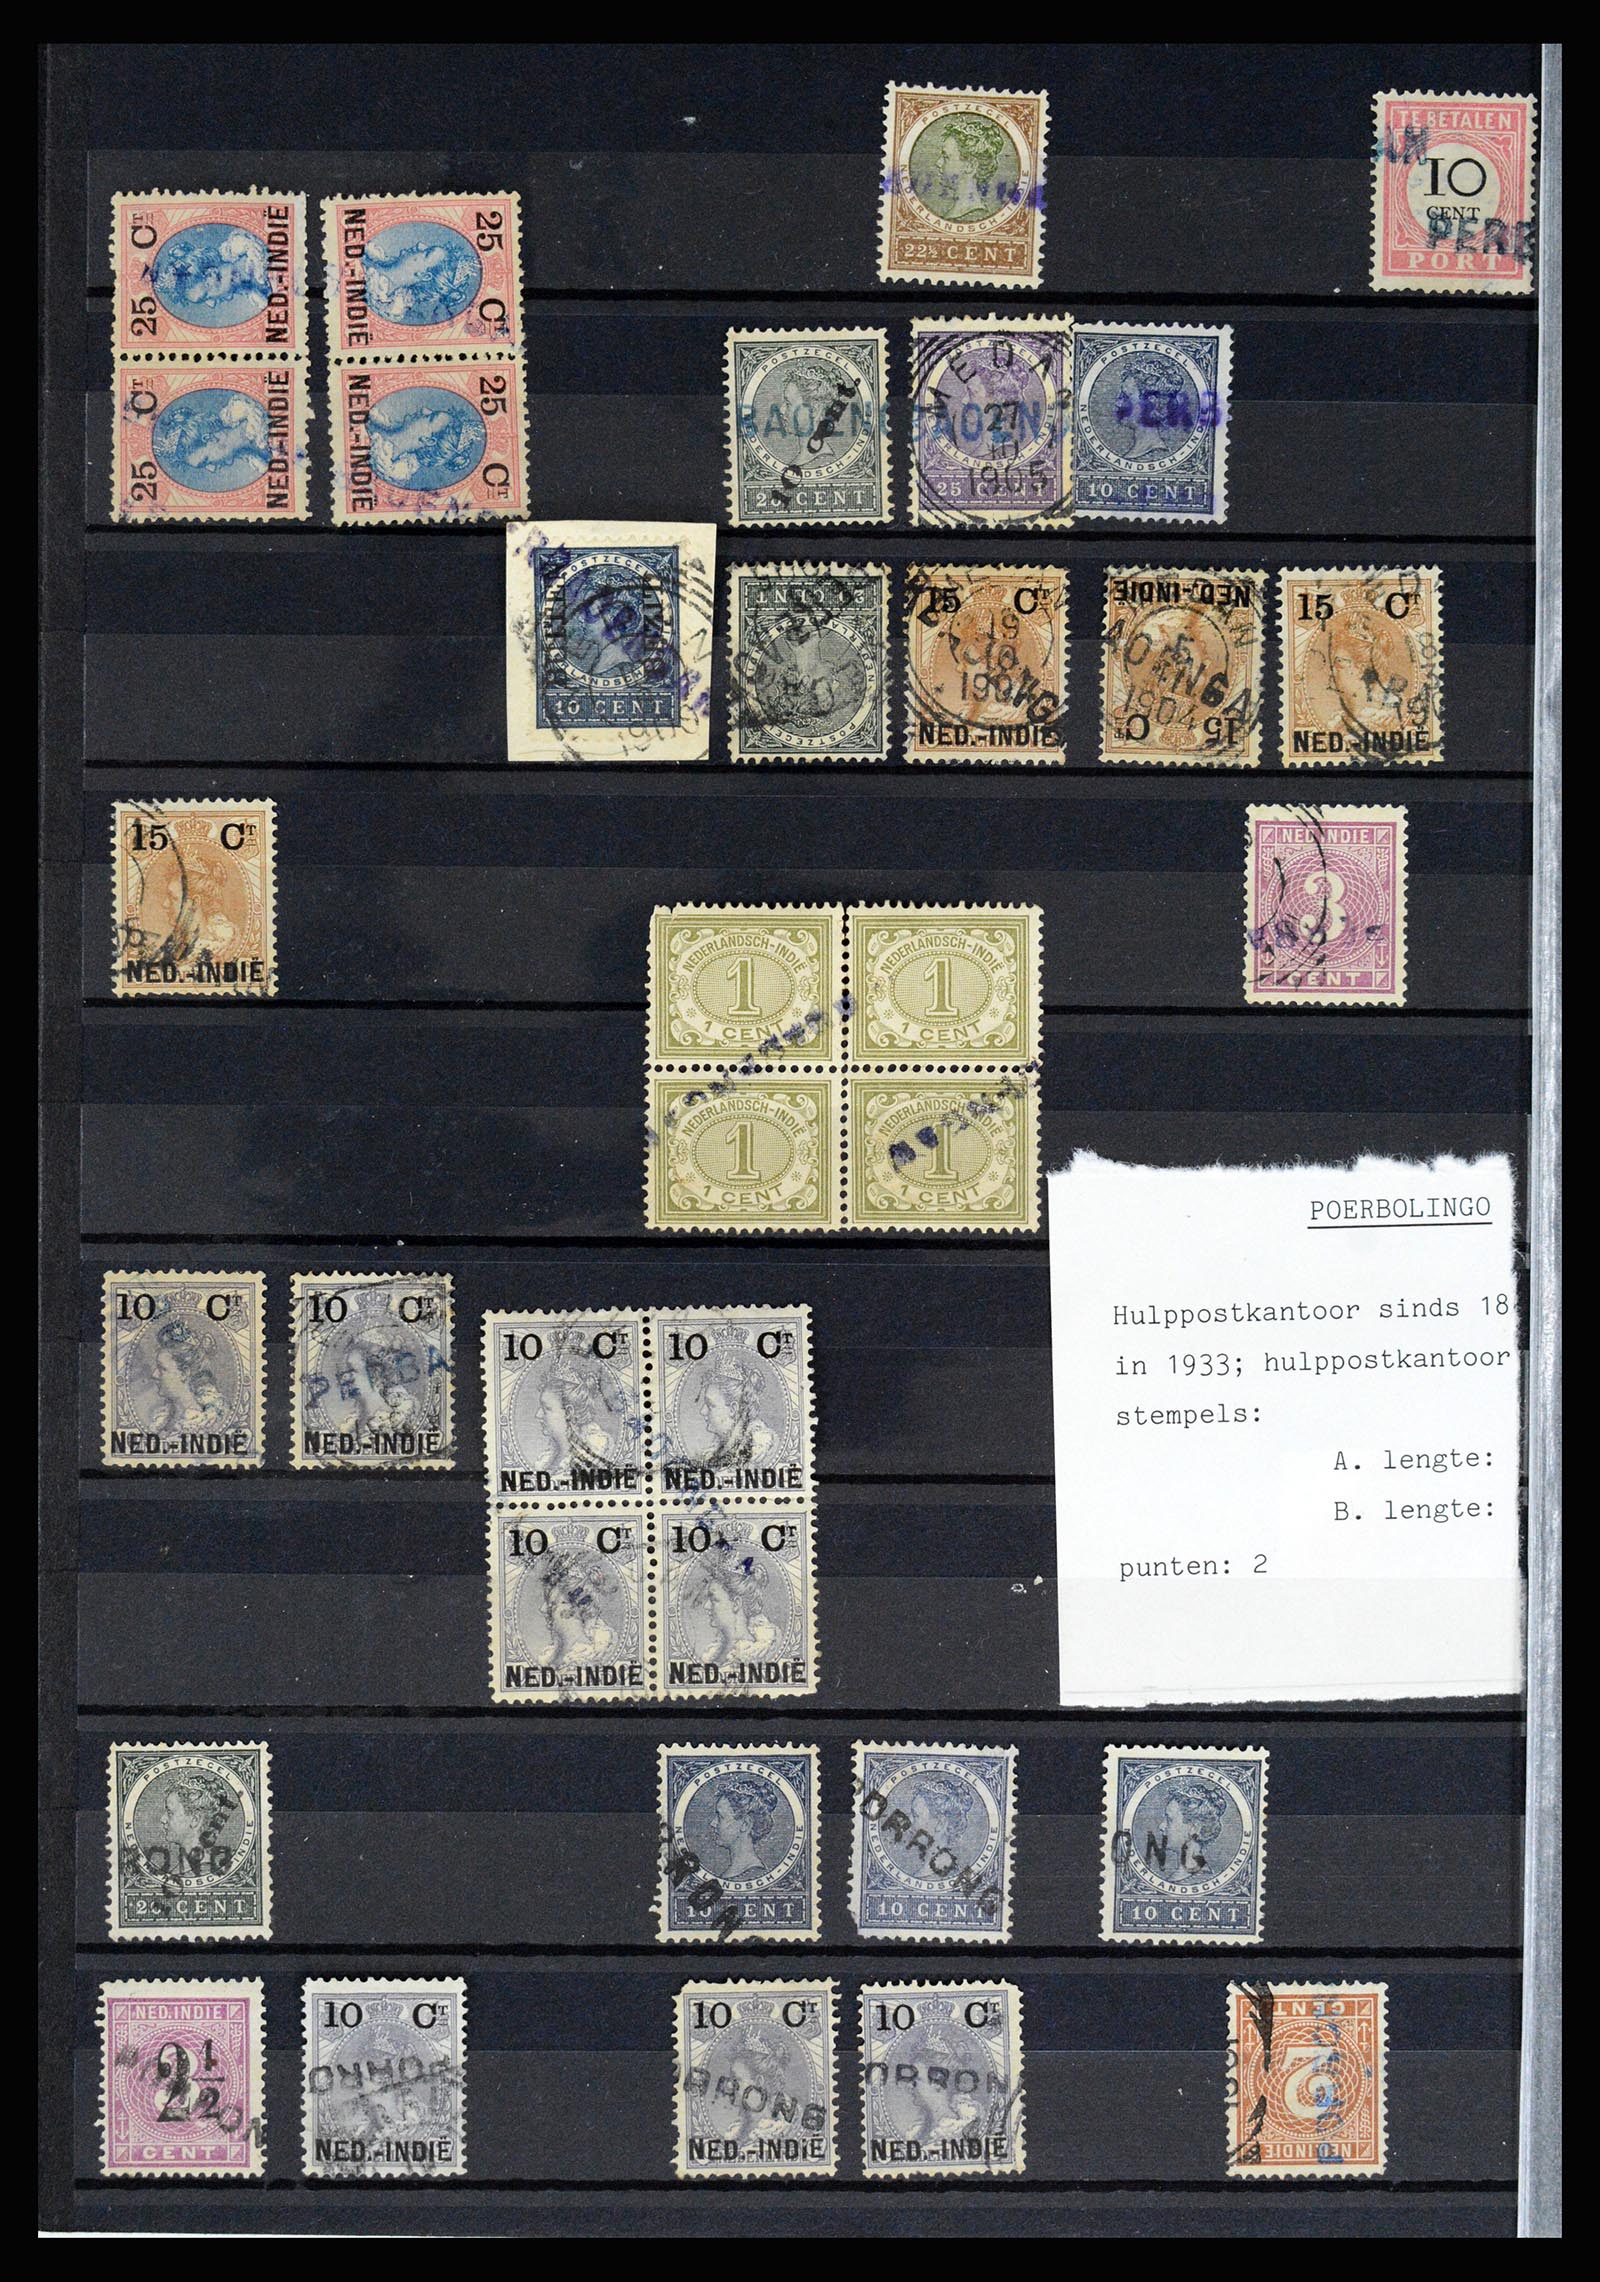 36512 058 - Stamp collection 36512 Nederlands Indië stempels 1872-1930.